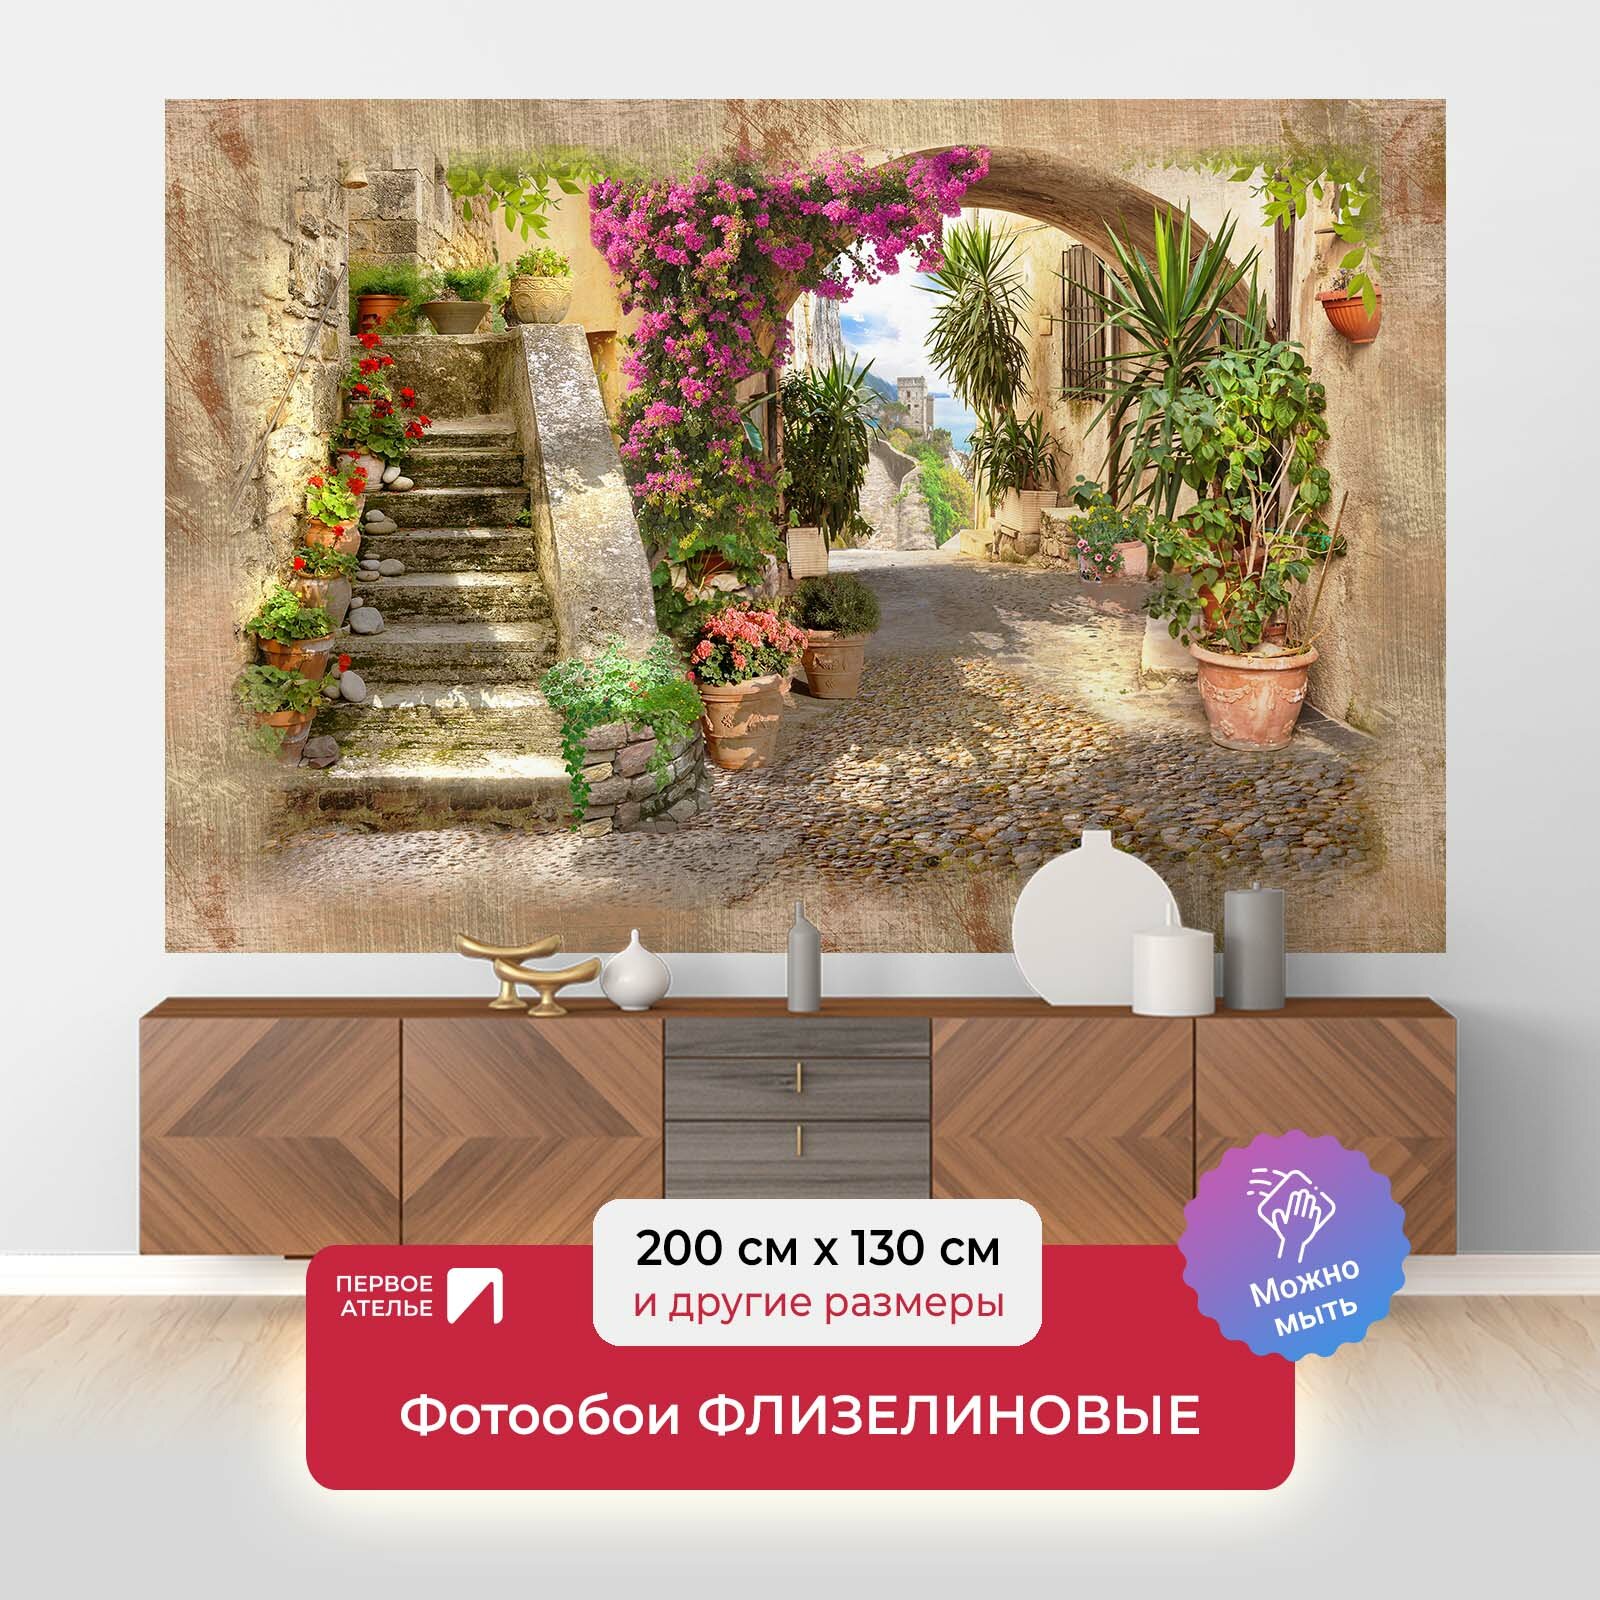 Фотообои на стену первое ателье "Старинная узкая европейская улочка с цветами в горшках и лестницей" 200х130 см (ШхВ), флизелиновые Premium